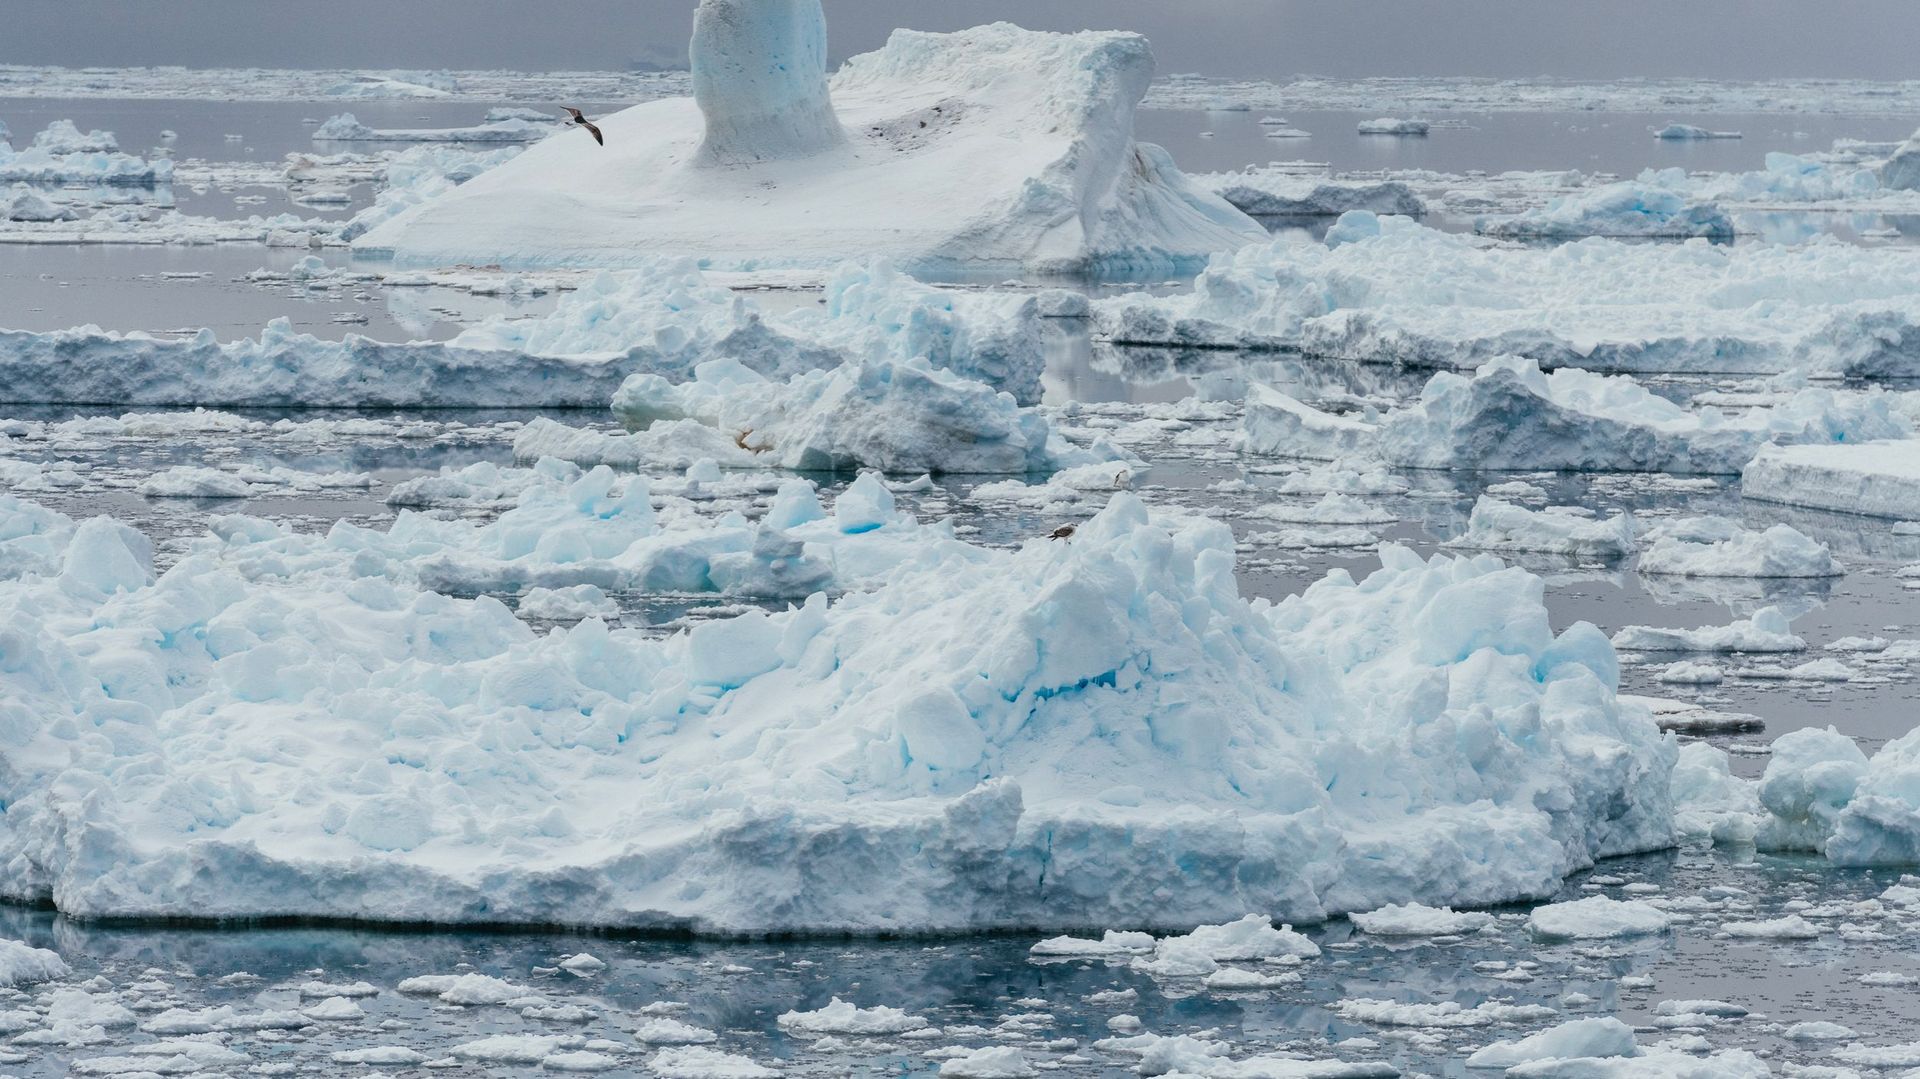 L'Antarctique, dans la région de la péninsule, se réchauffe 5 fois plus que le taux moyen de la planète. Le reste du continent reste extrêmement froid, mais le retrait des glaciers, la fragilité de la banquise, l’amincissement de la calotte glaciaire sont